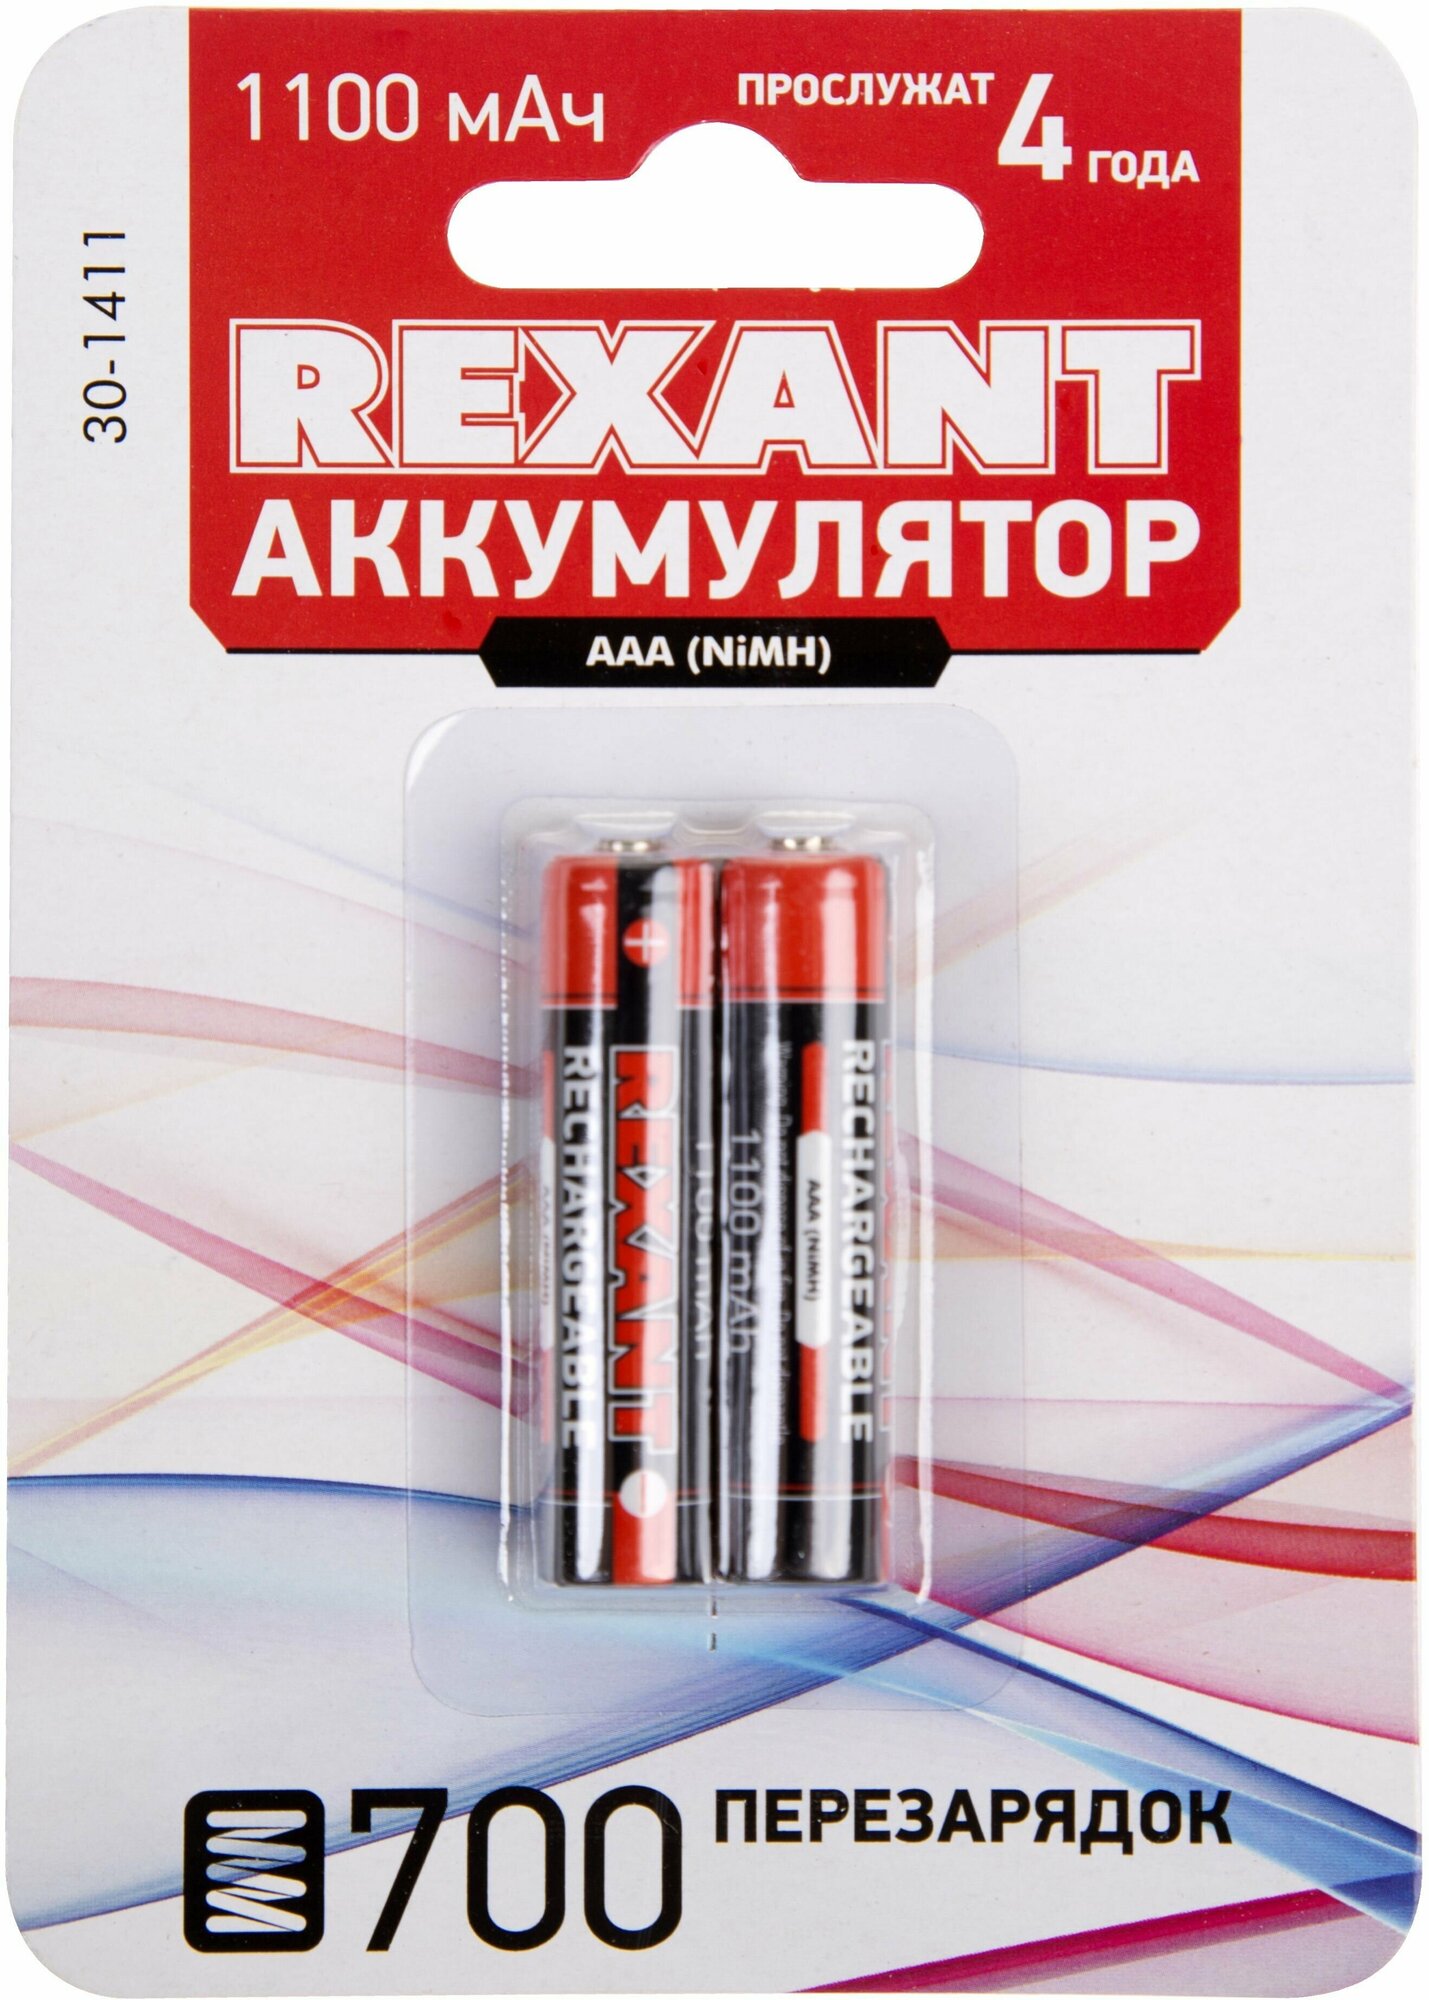 батарейка аккумуляторная (ааа, ni-mh, 1,2в, 1100мач) rexant 2шт 30-1411 - фото №2